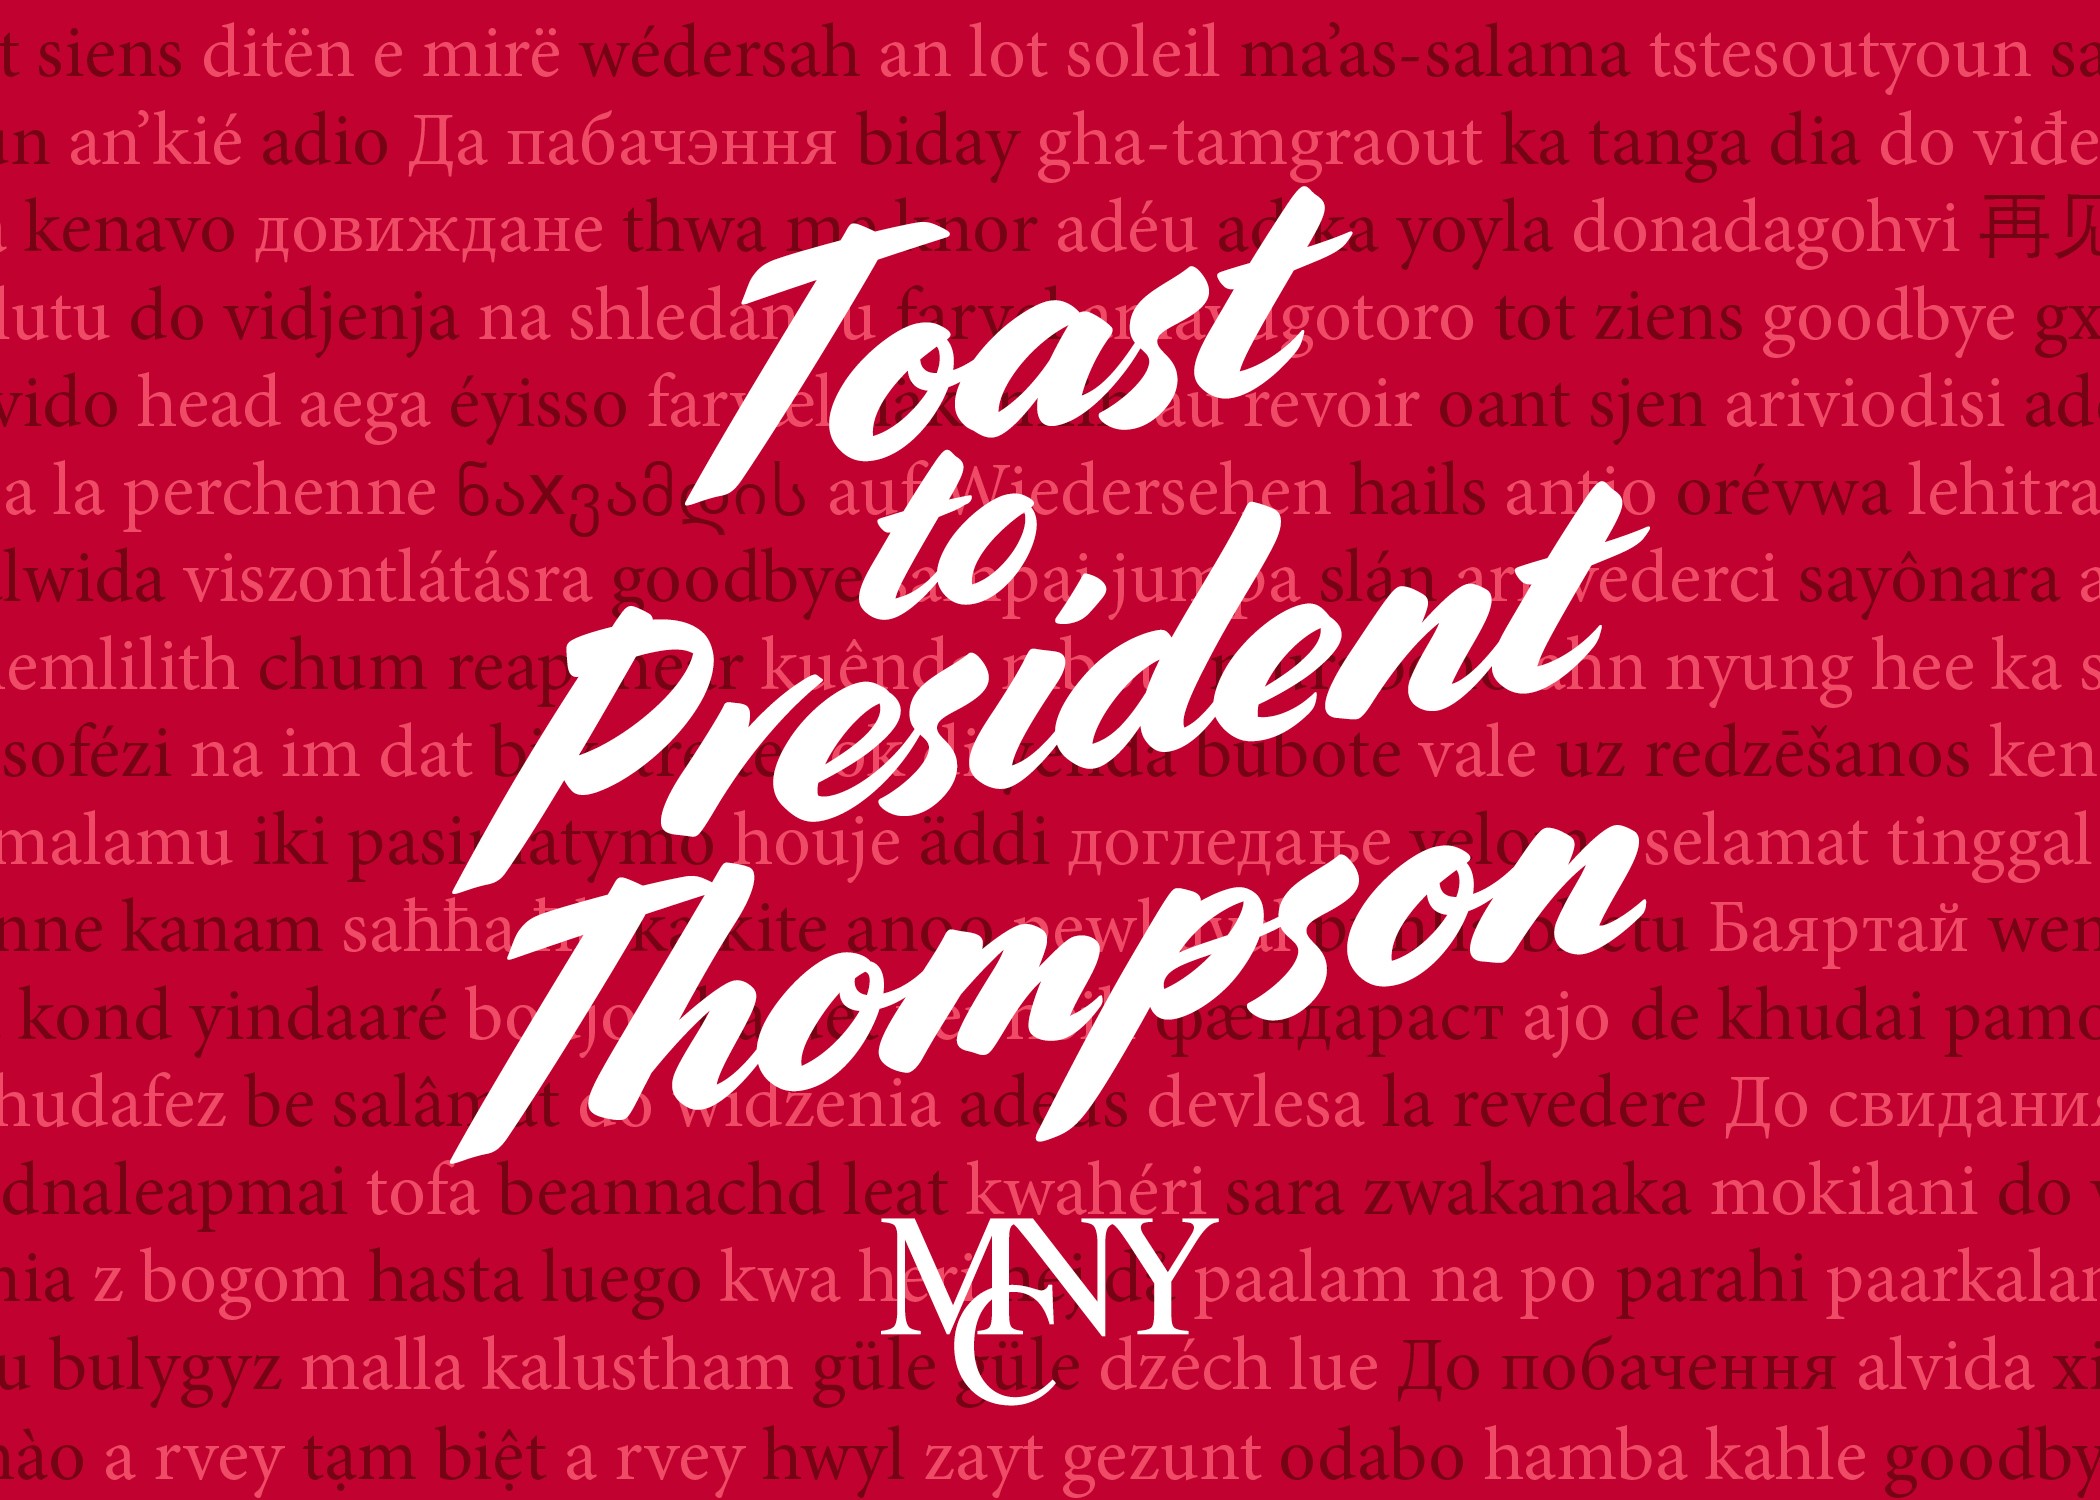 Toast to President Thompson